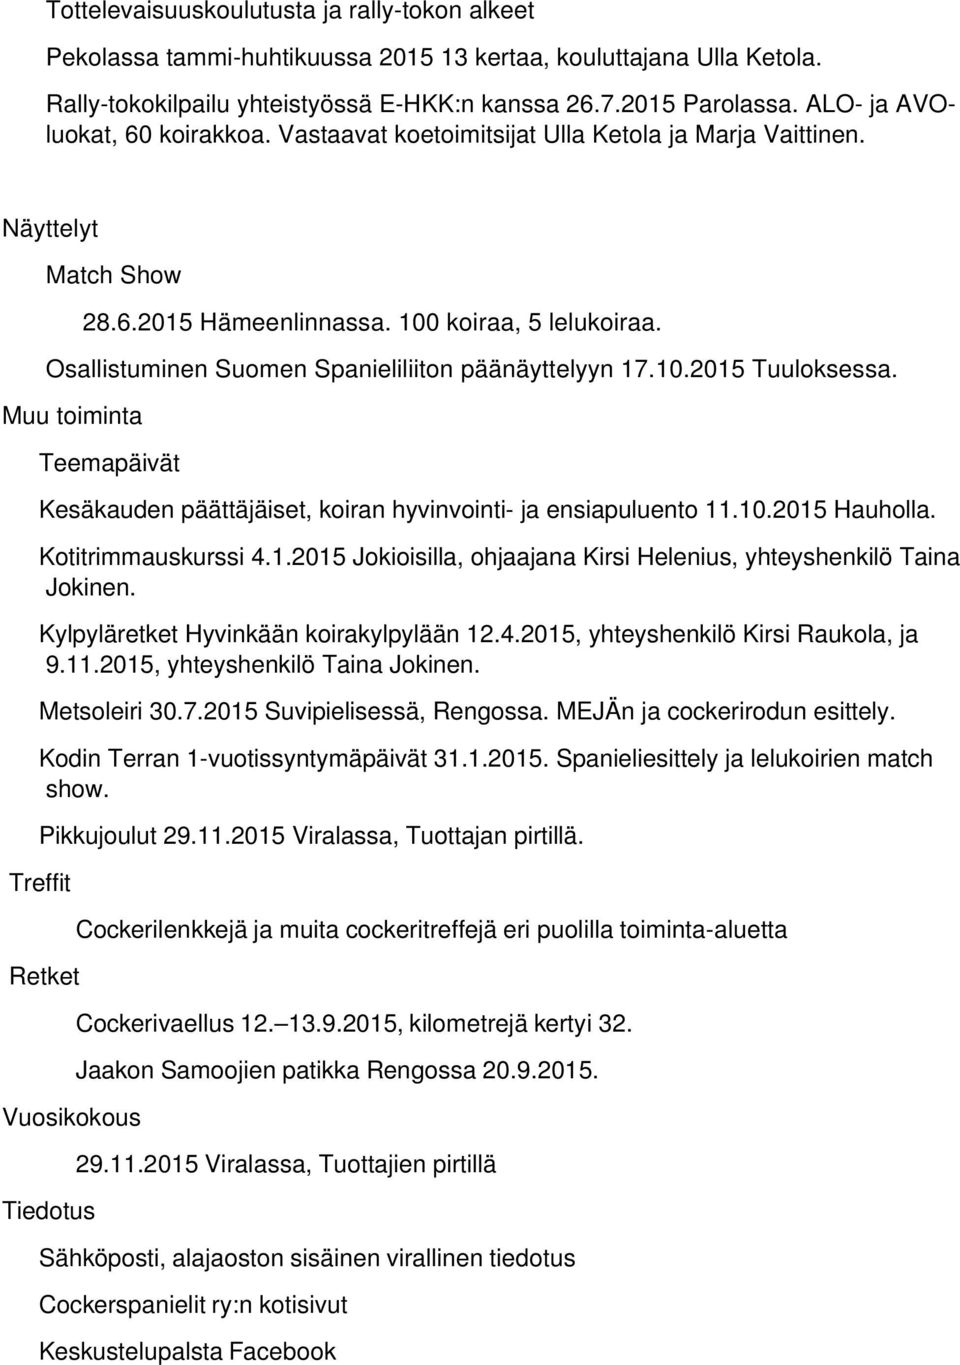 Osallistuminen Suomen Spanieliliiton päänäyttelyyn 17.10.2015 Tuuloksessa. Muu toiminta Teemapäivät Kesäkauden päättäjäiset, koiran hyvinvointi- ja ensiapuluento 11.10.2015 Hauholla.